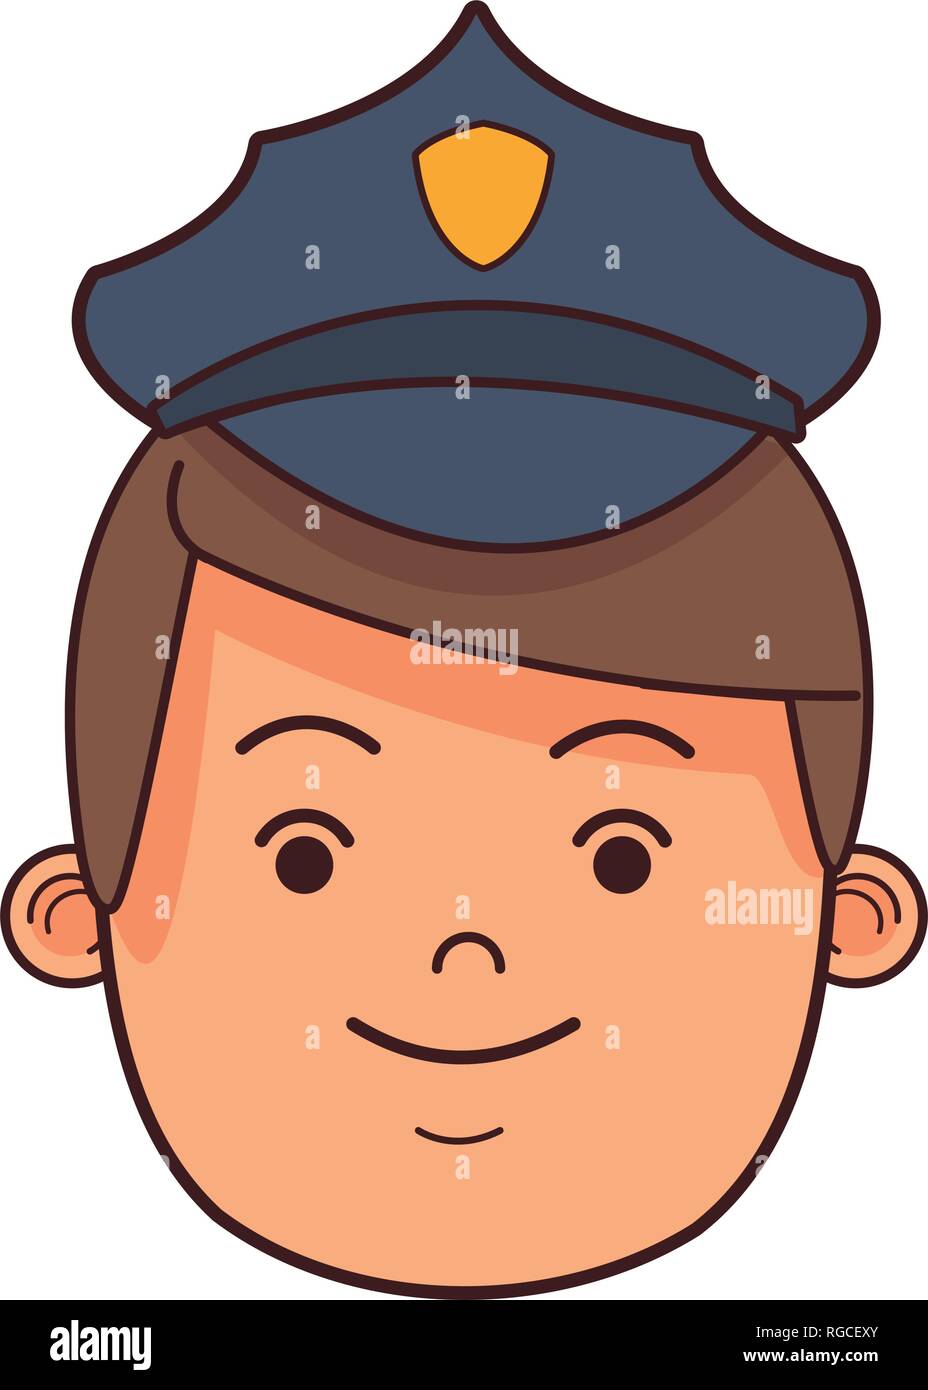 police man face cartoon Stock Vector